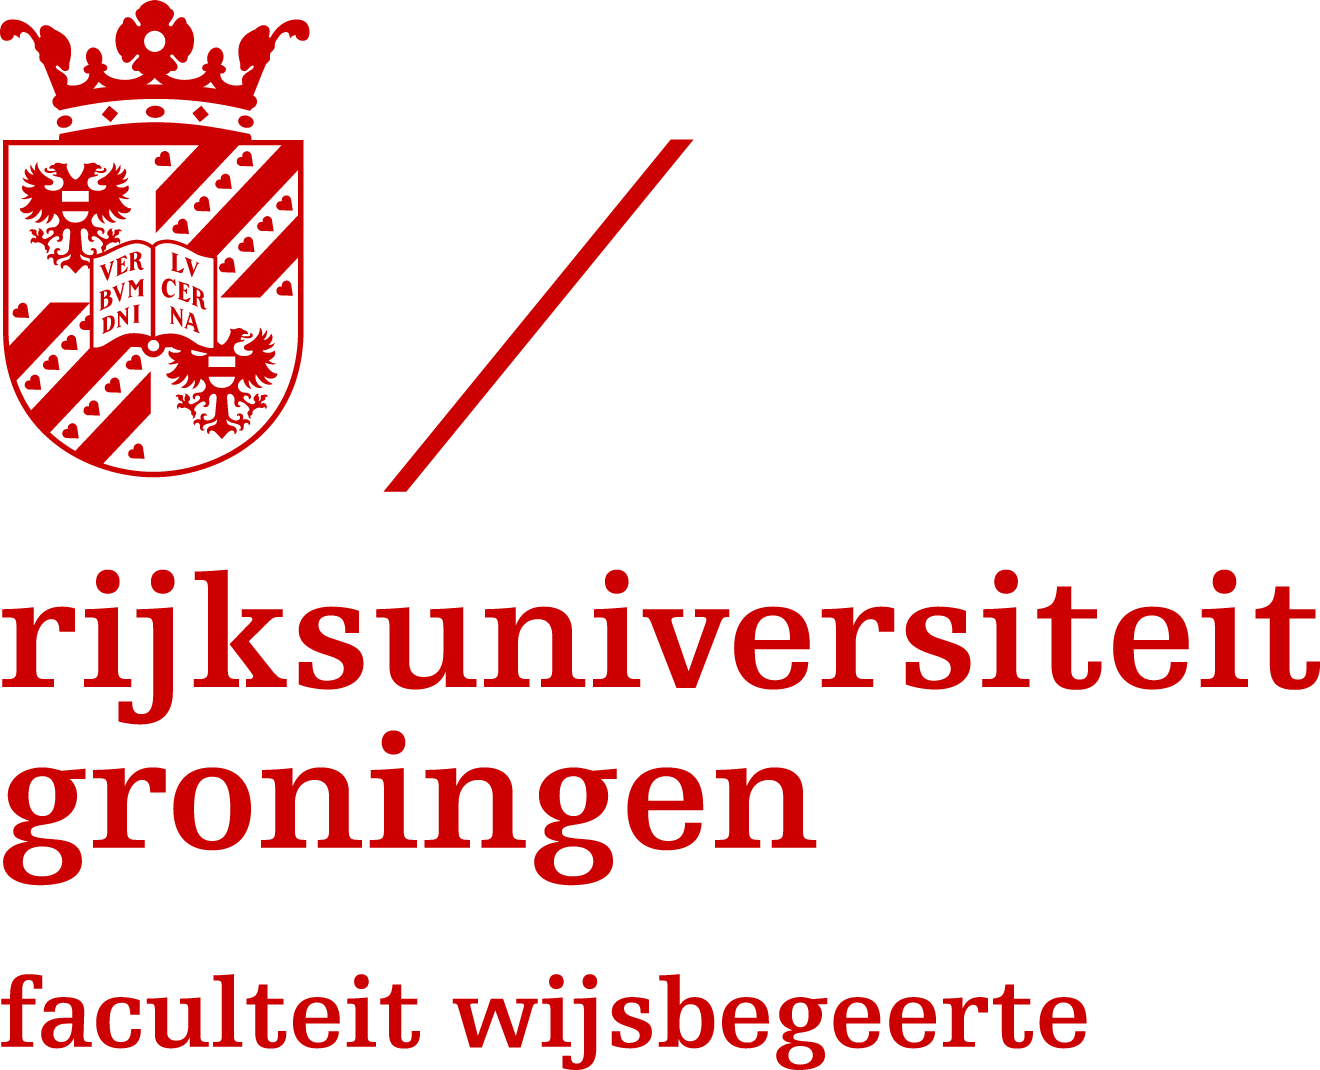 Rijksuniversiteit Groningen: Faculteit Wijsbegeerte